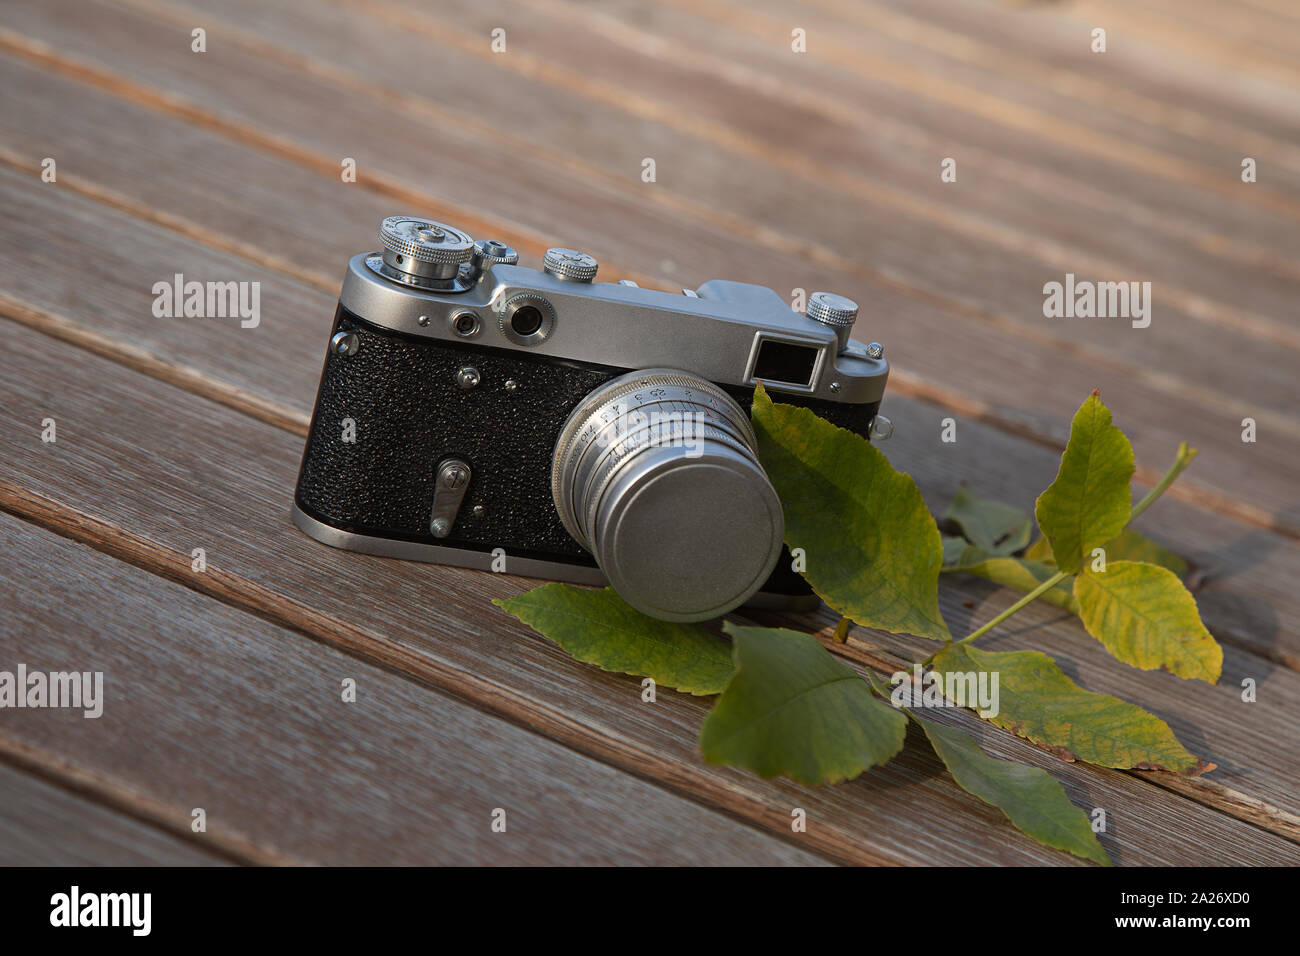 Noch immer leben Herbst Stimmung Bild mit Vintage Kamera und Blätter auf Holz- Hintergrund Stockfoto